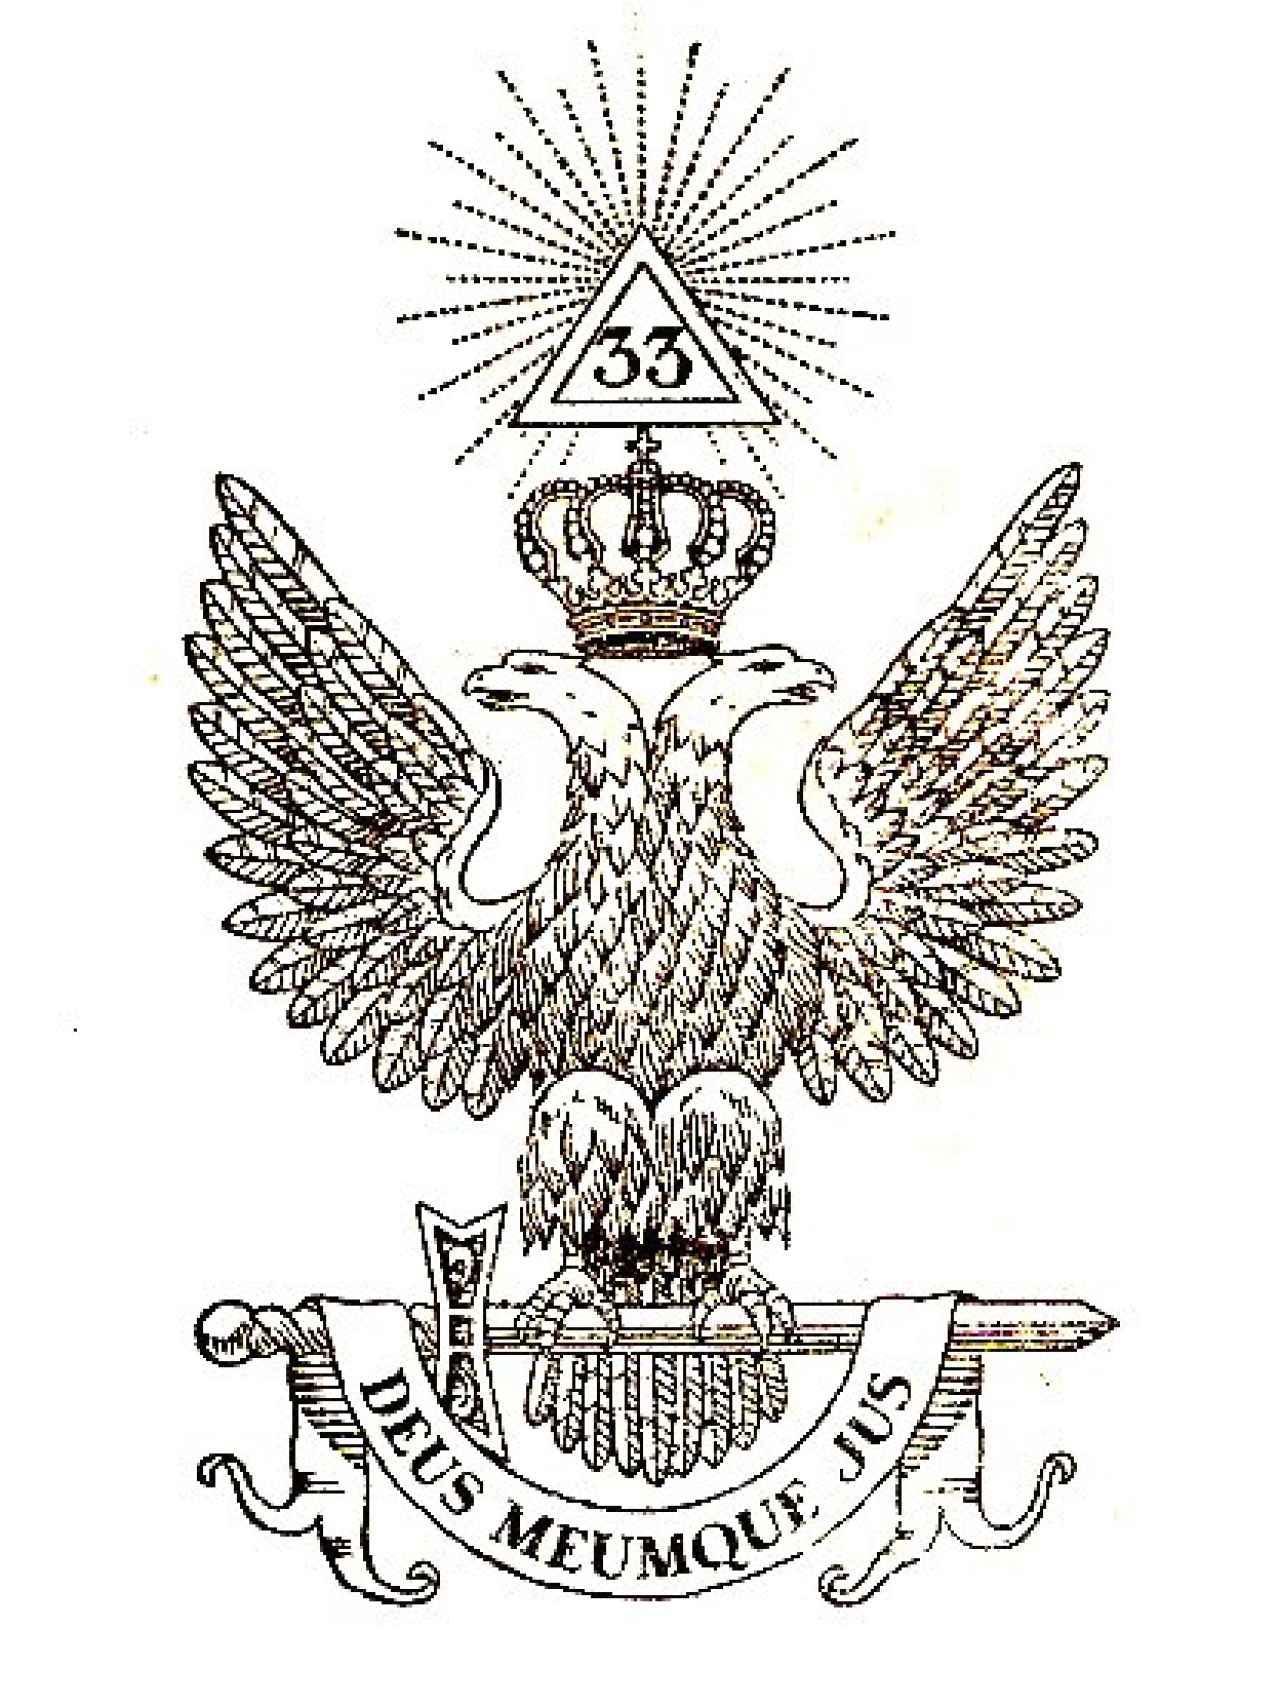 Águila bicéfala, un símbolo asociado al Rito Escocés Antiguo y Aceptado.